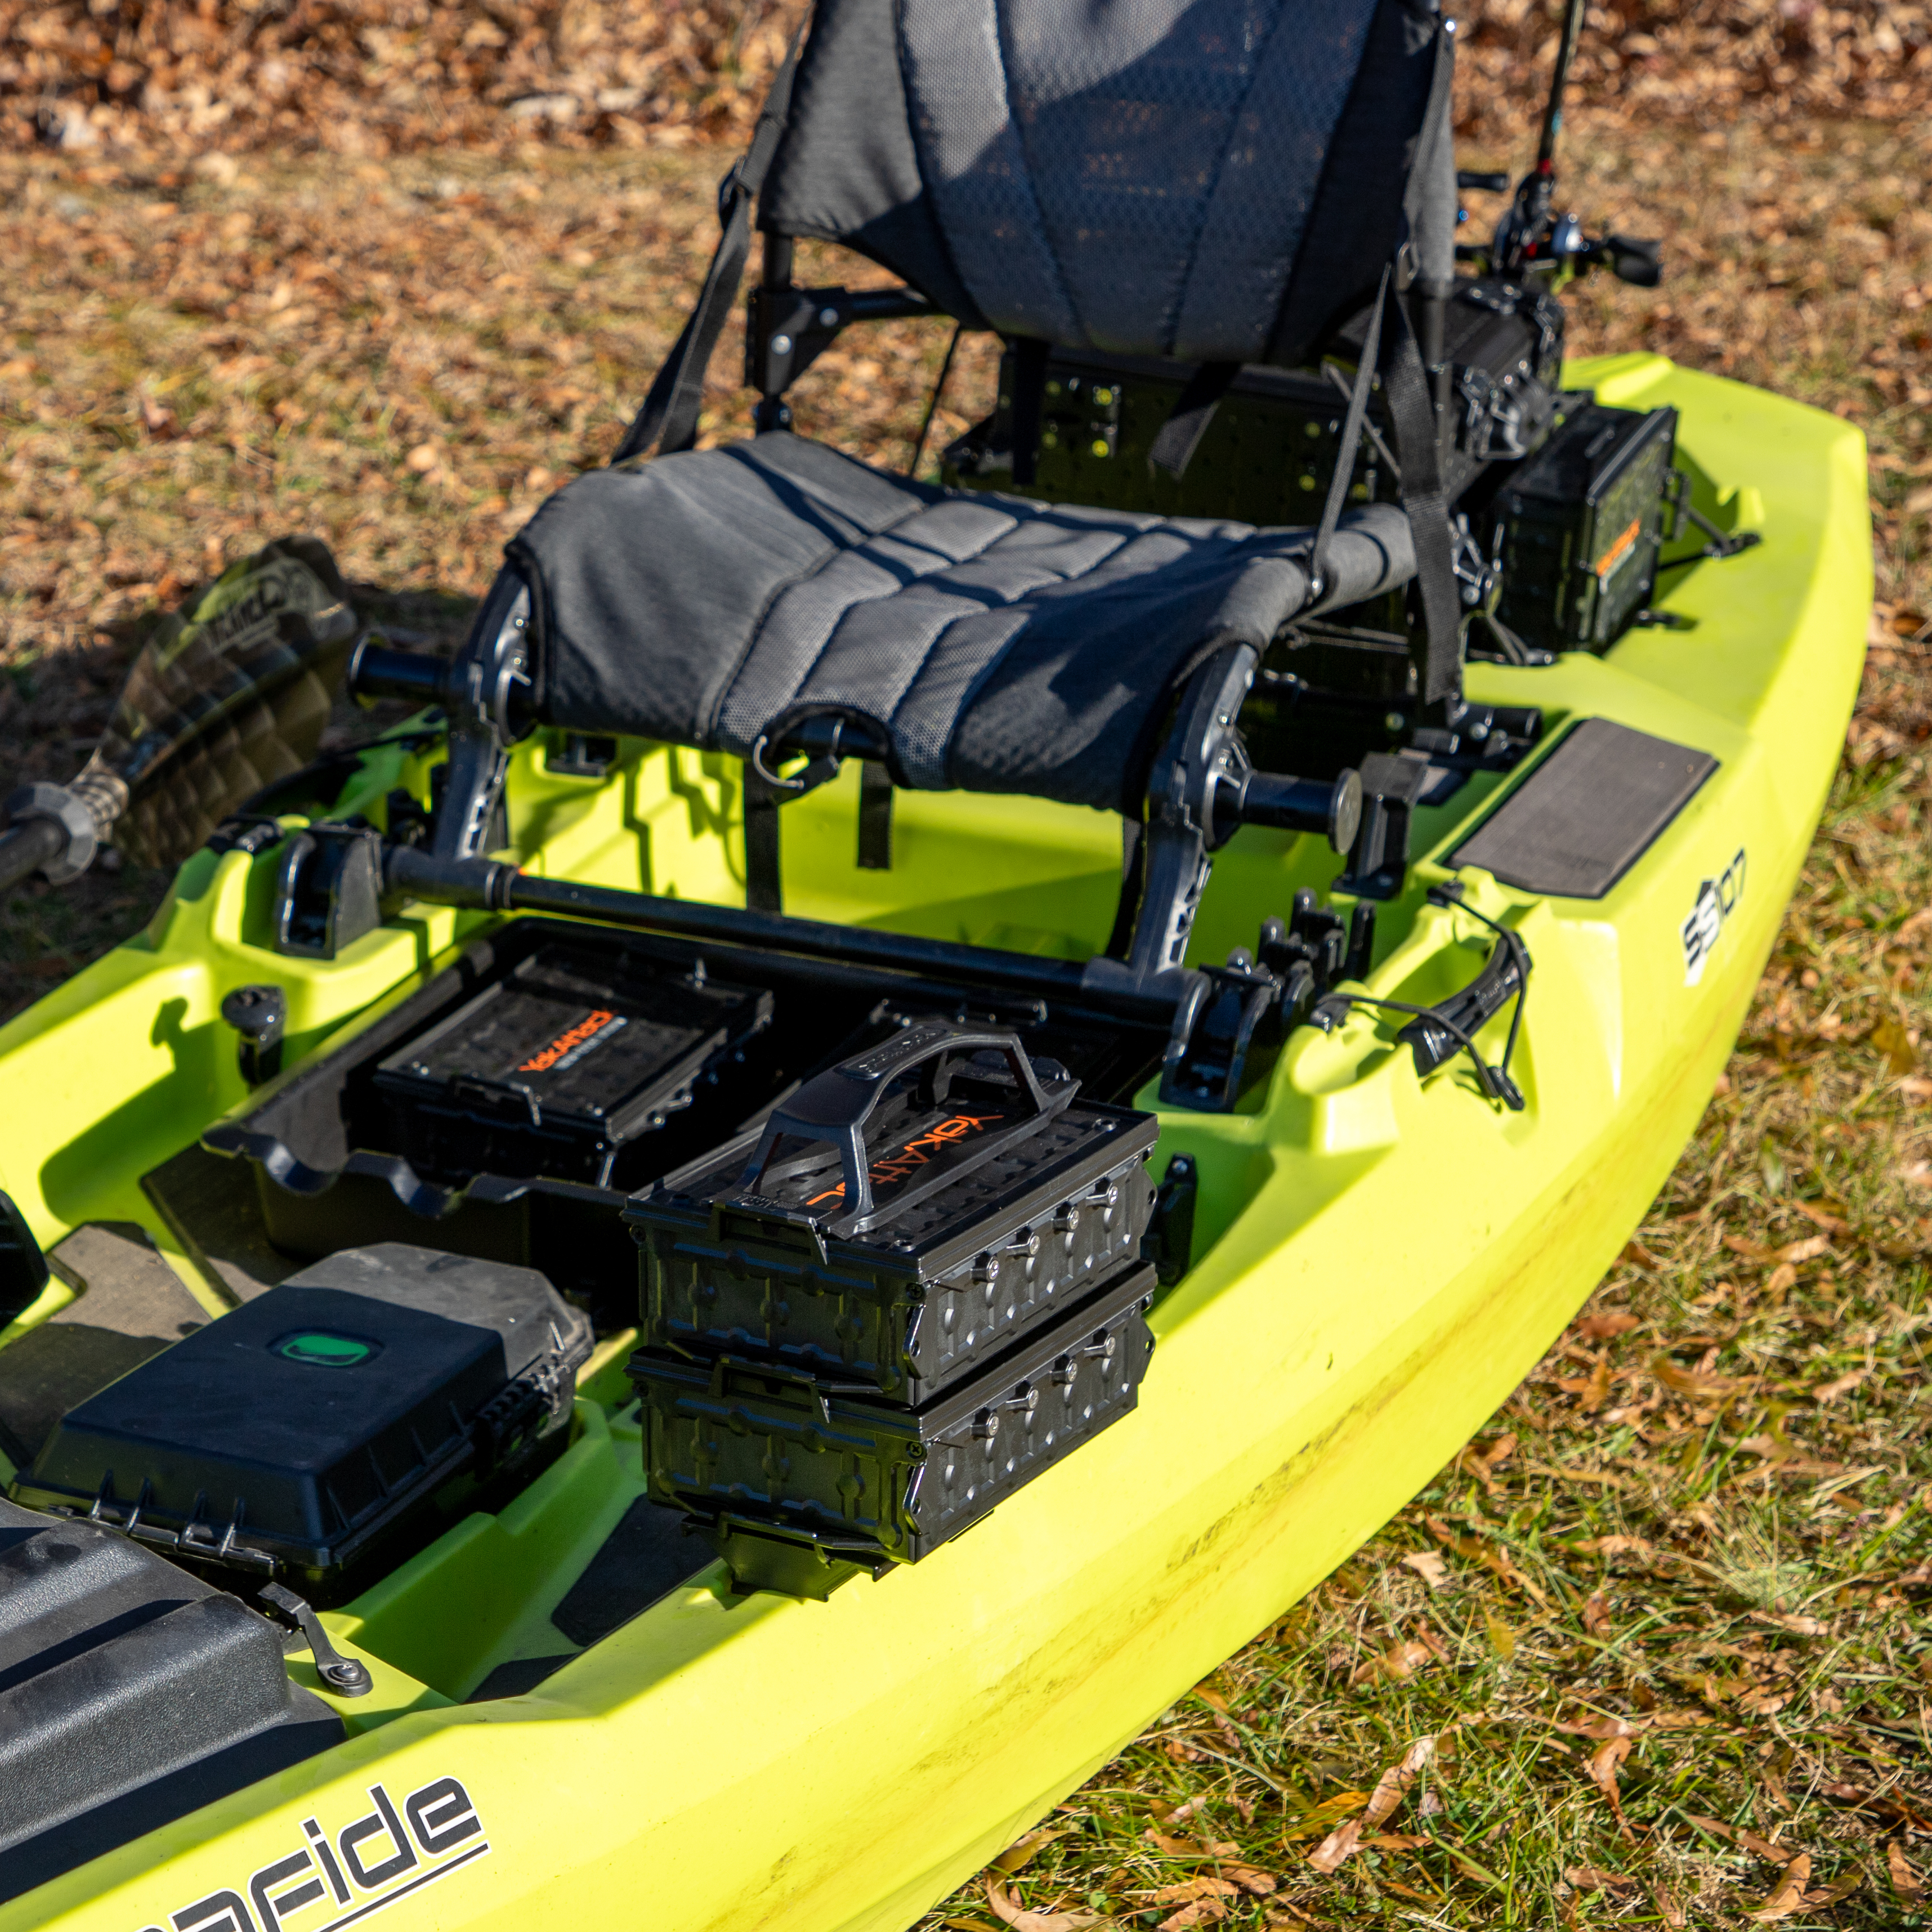 TracPak storage system shown on a bonafide kayak fishing kayak